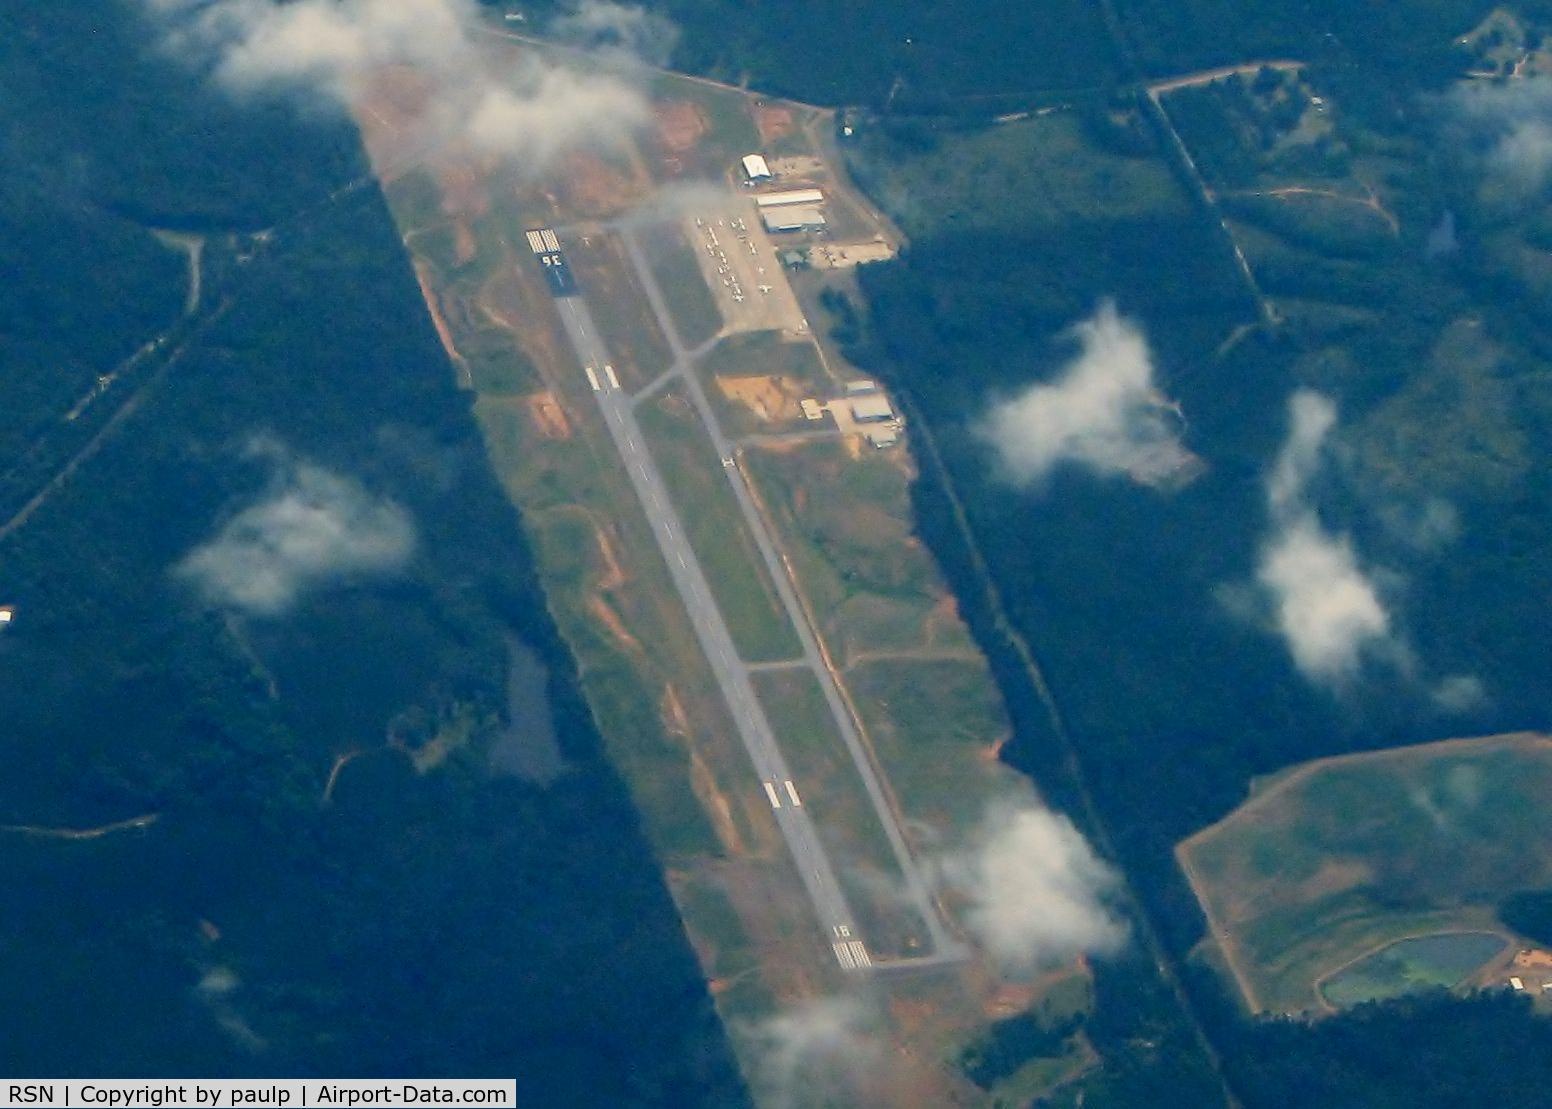 Ruston Regional Airport (RSN) - Over Ruston, Louisiana